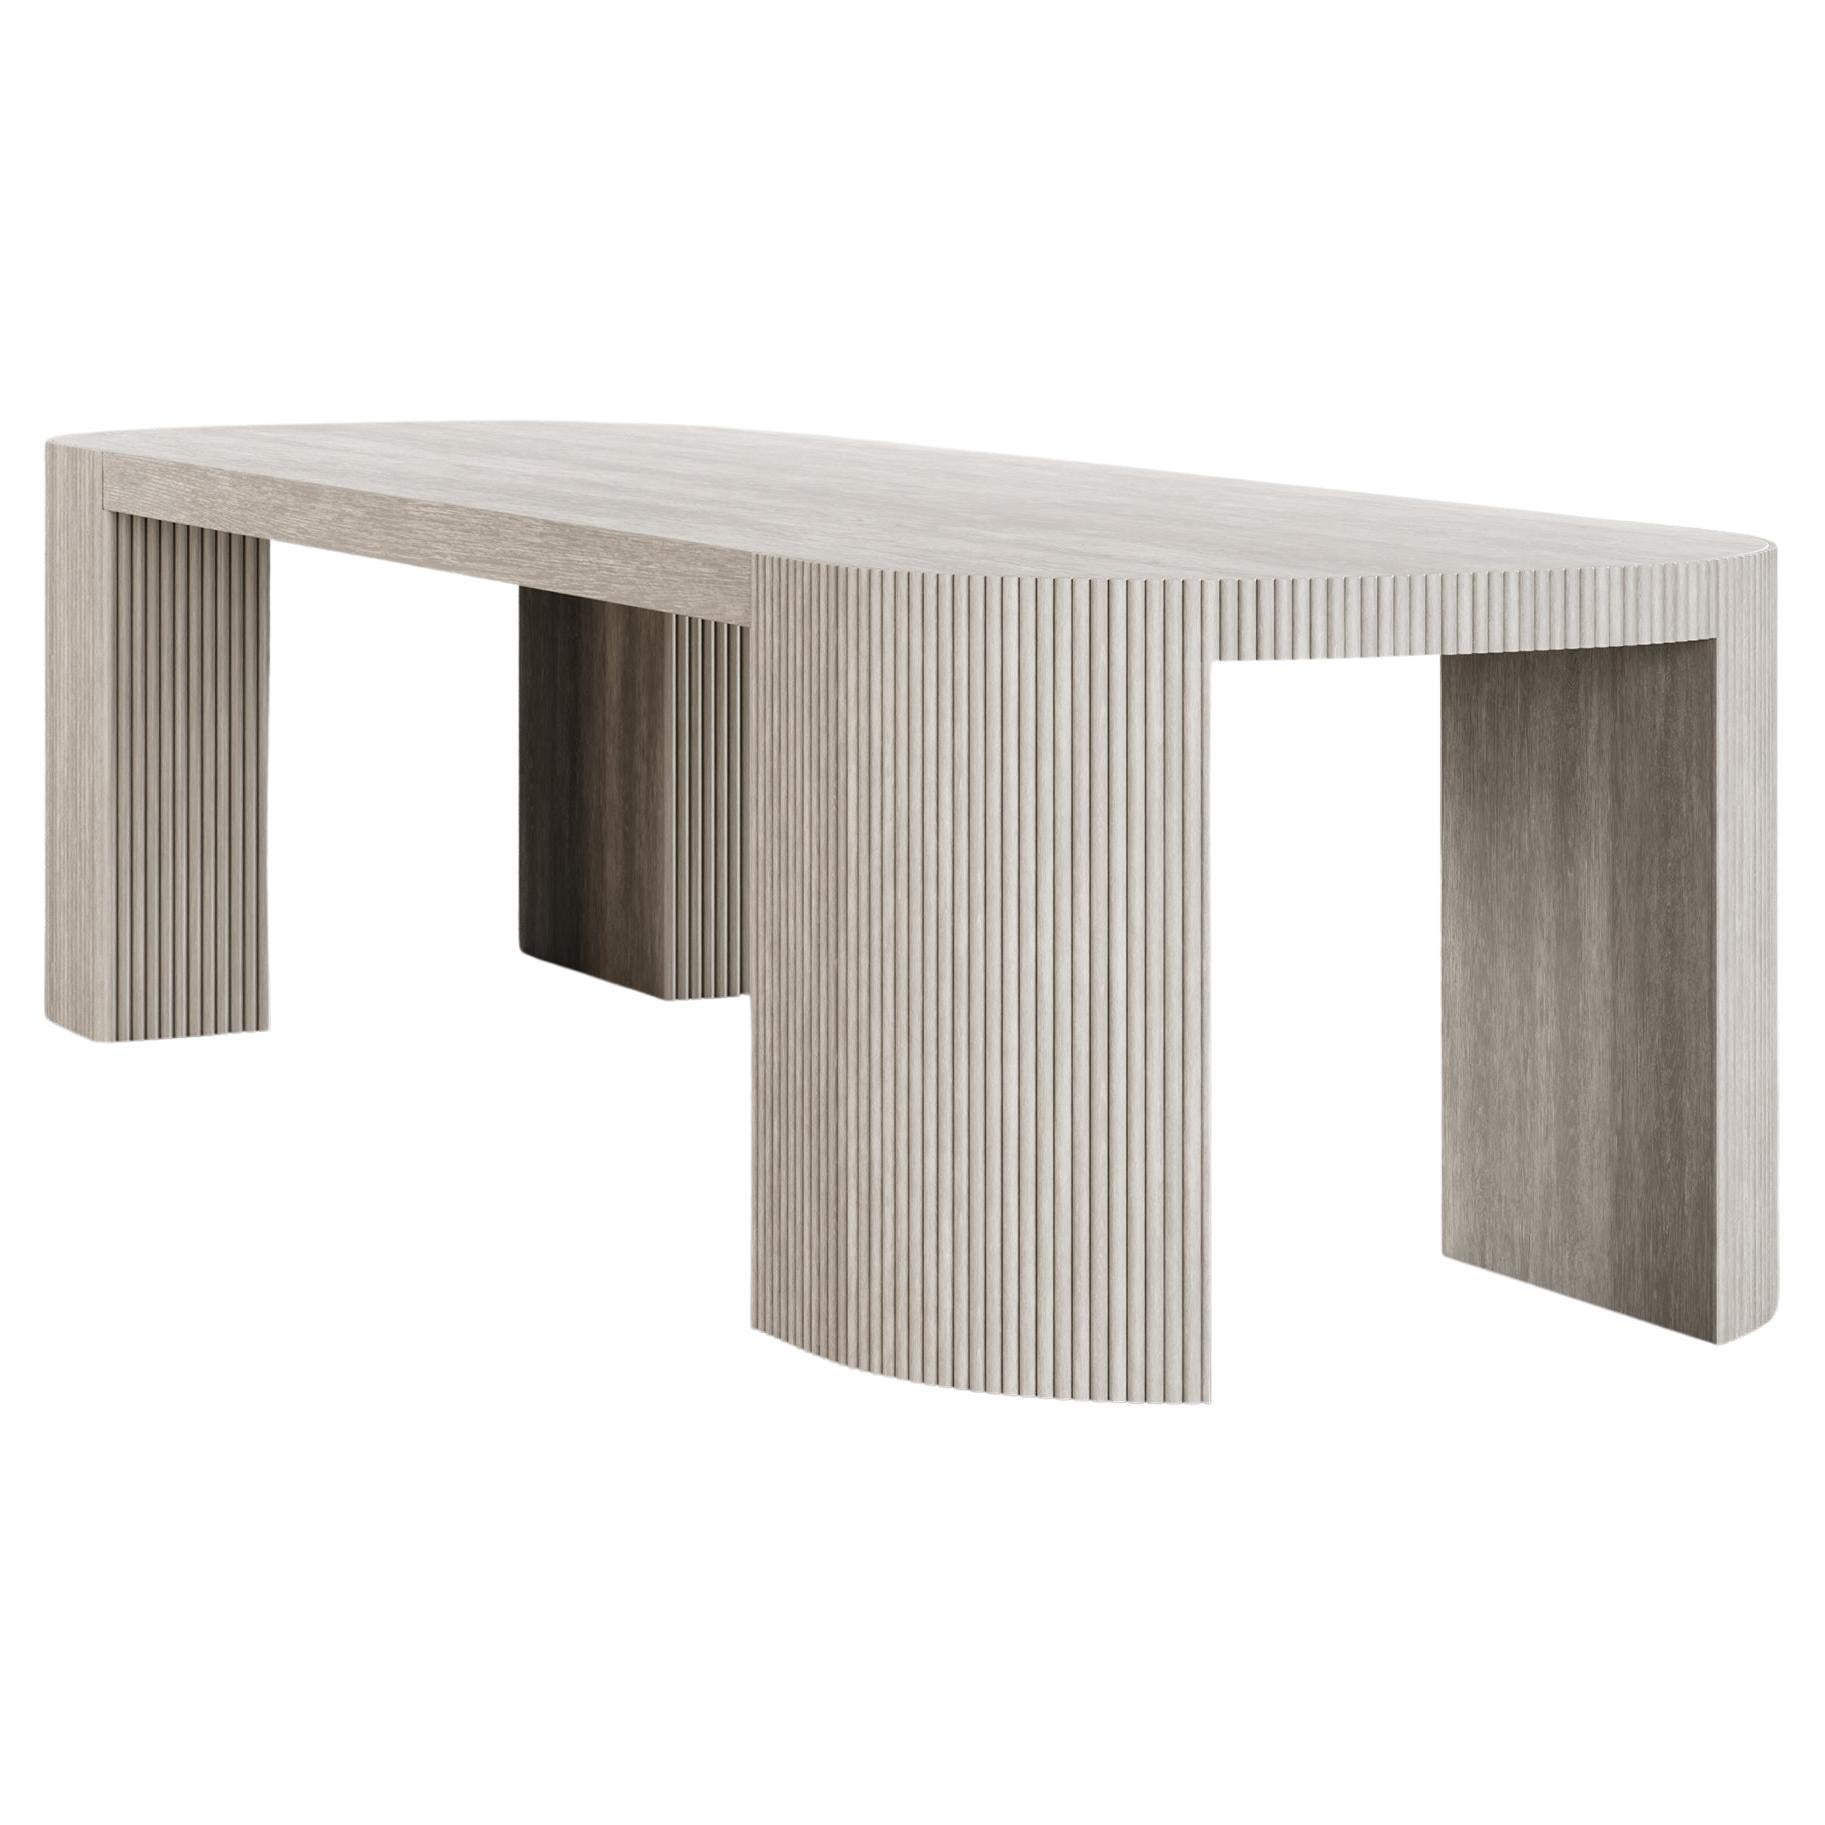 SWAY DINING TABLE – modernes Design mit sandfarbenem Eichenholz + mattem Lack